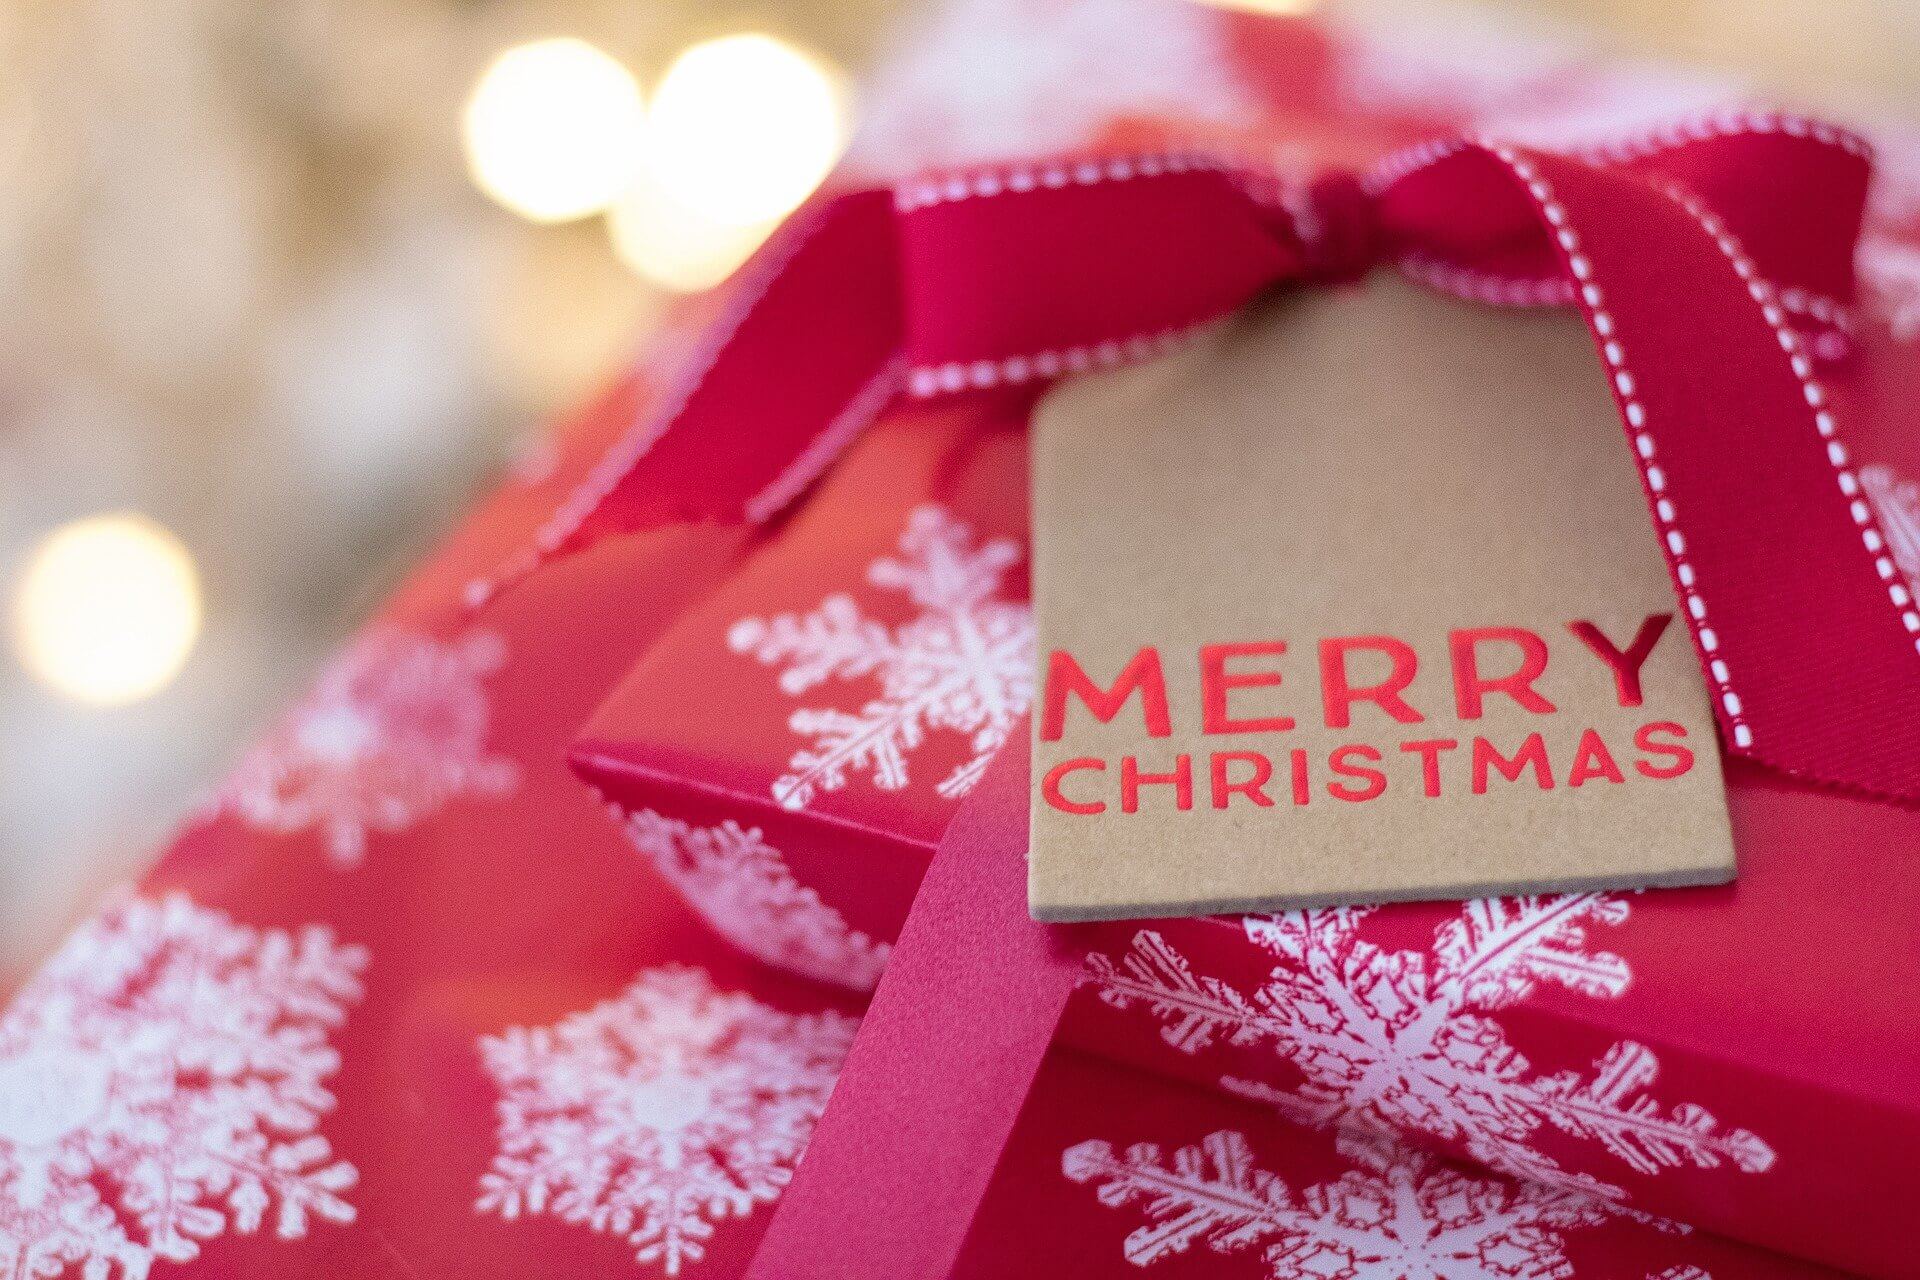 Χριστουγεννιάτικα δώρα Στην Kosmimatothiki θα βρείτε αμέτρητες επιλογές δώρων για κάθε προτίμηση και με μεγάλη γκάμα τιμών. Περιηγηθείτε στο χριστουγεννιάτικο ιστότοπό μας για να επιλέξετε τα δικά σας δώρα.